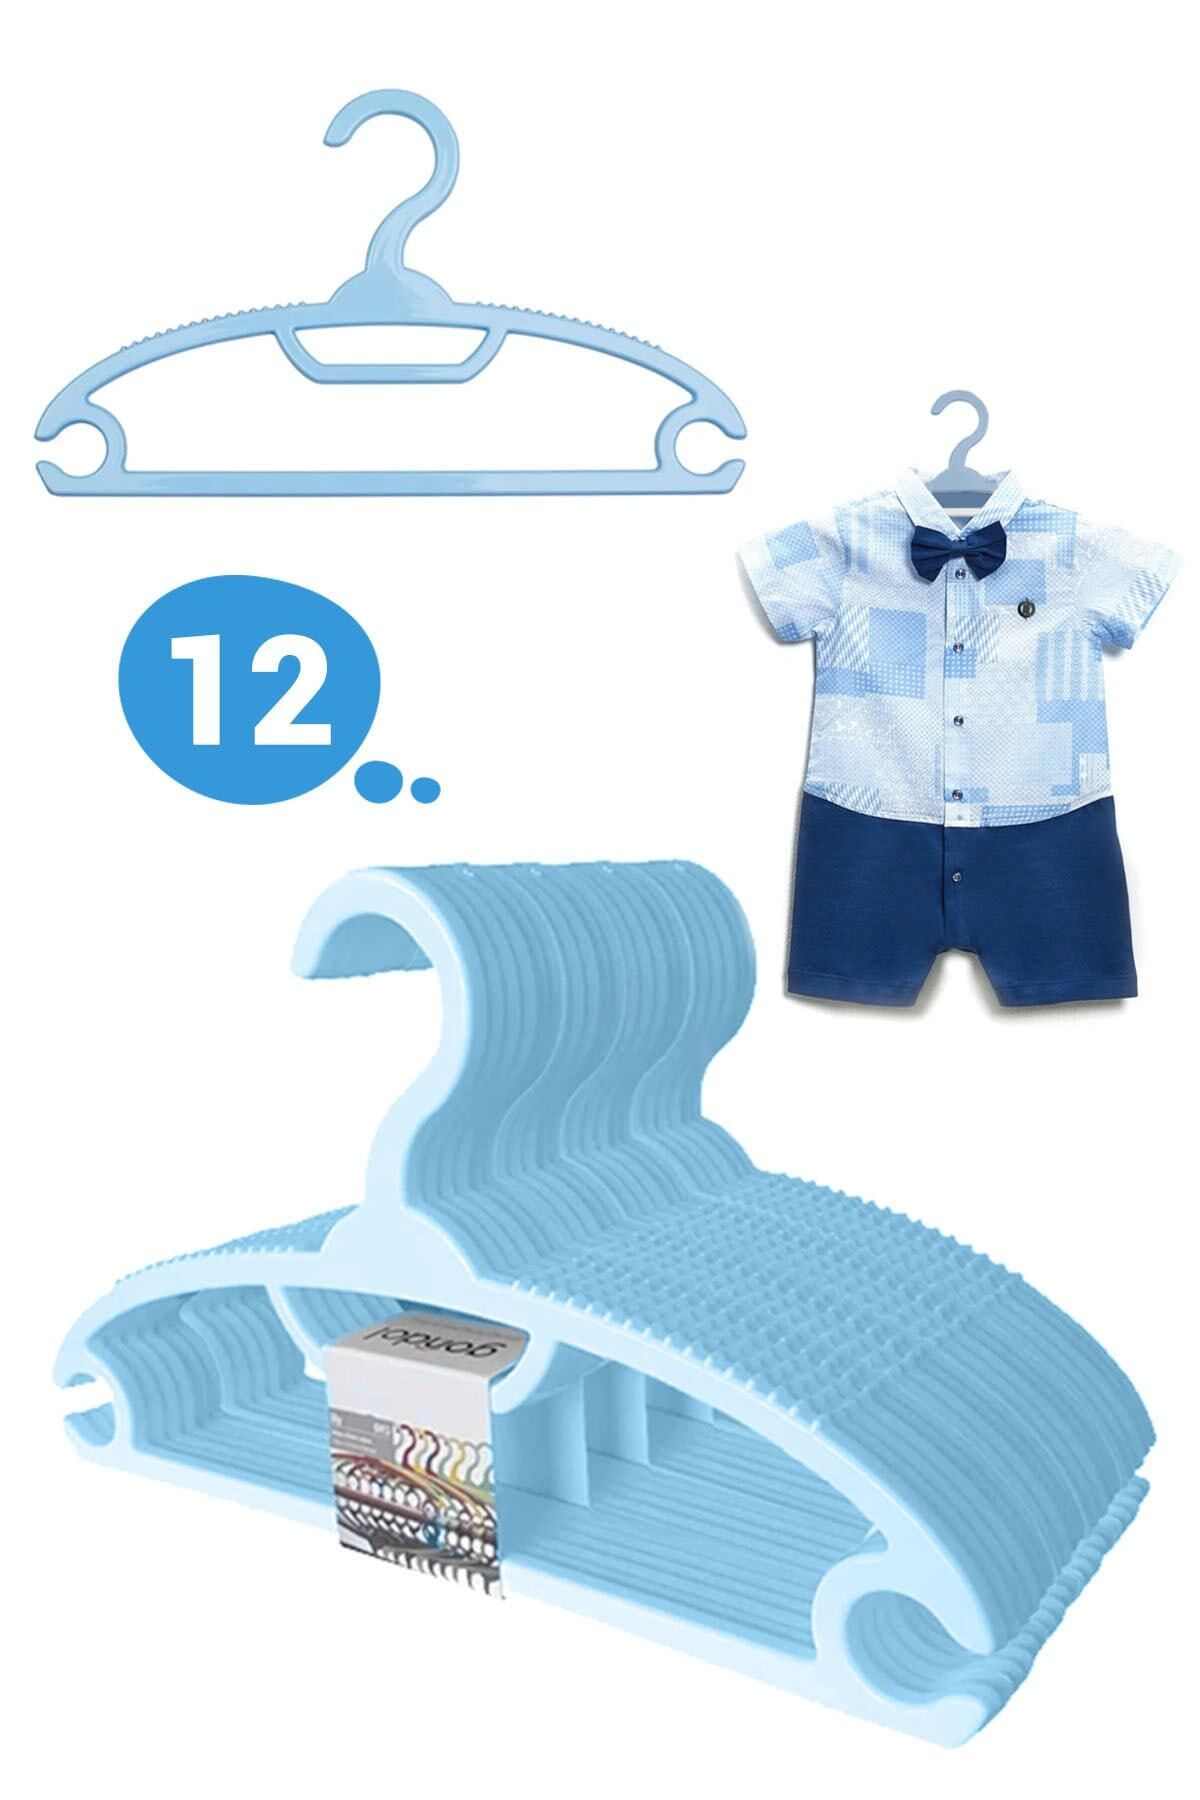 Morpanya Bebek Elbise Askısı Bebek Çocuk Giysi Kıyafet Askısı 12 Adet Gondol Mavi Askı